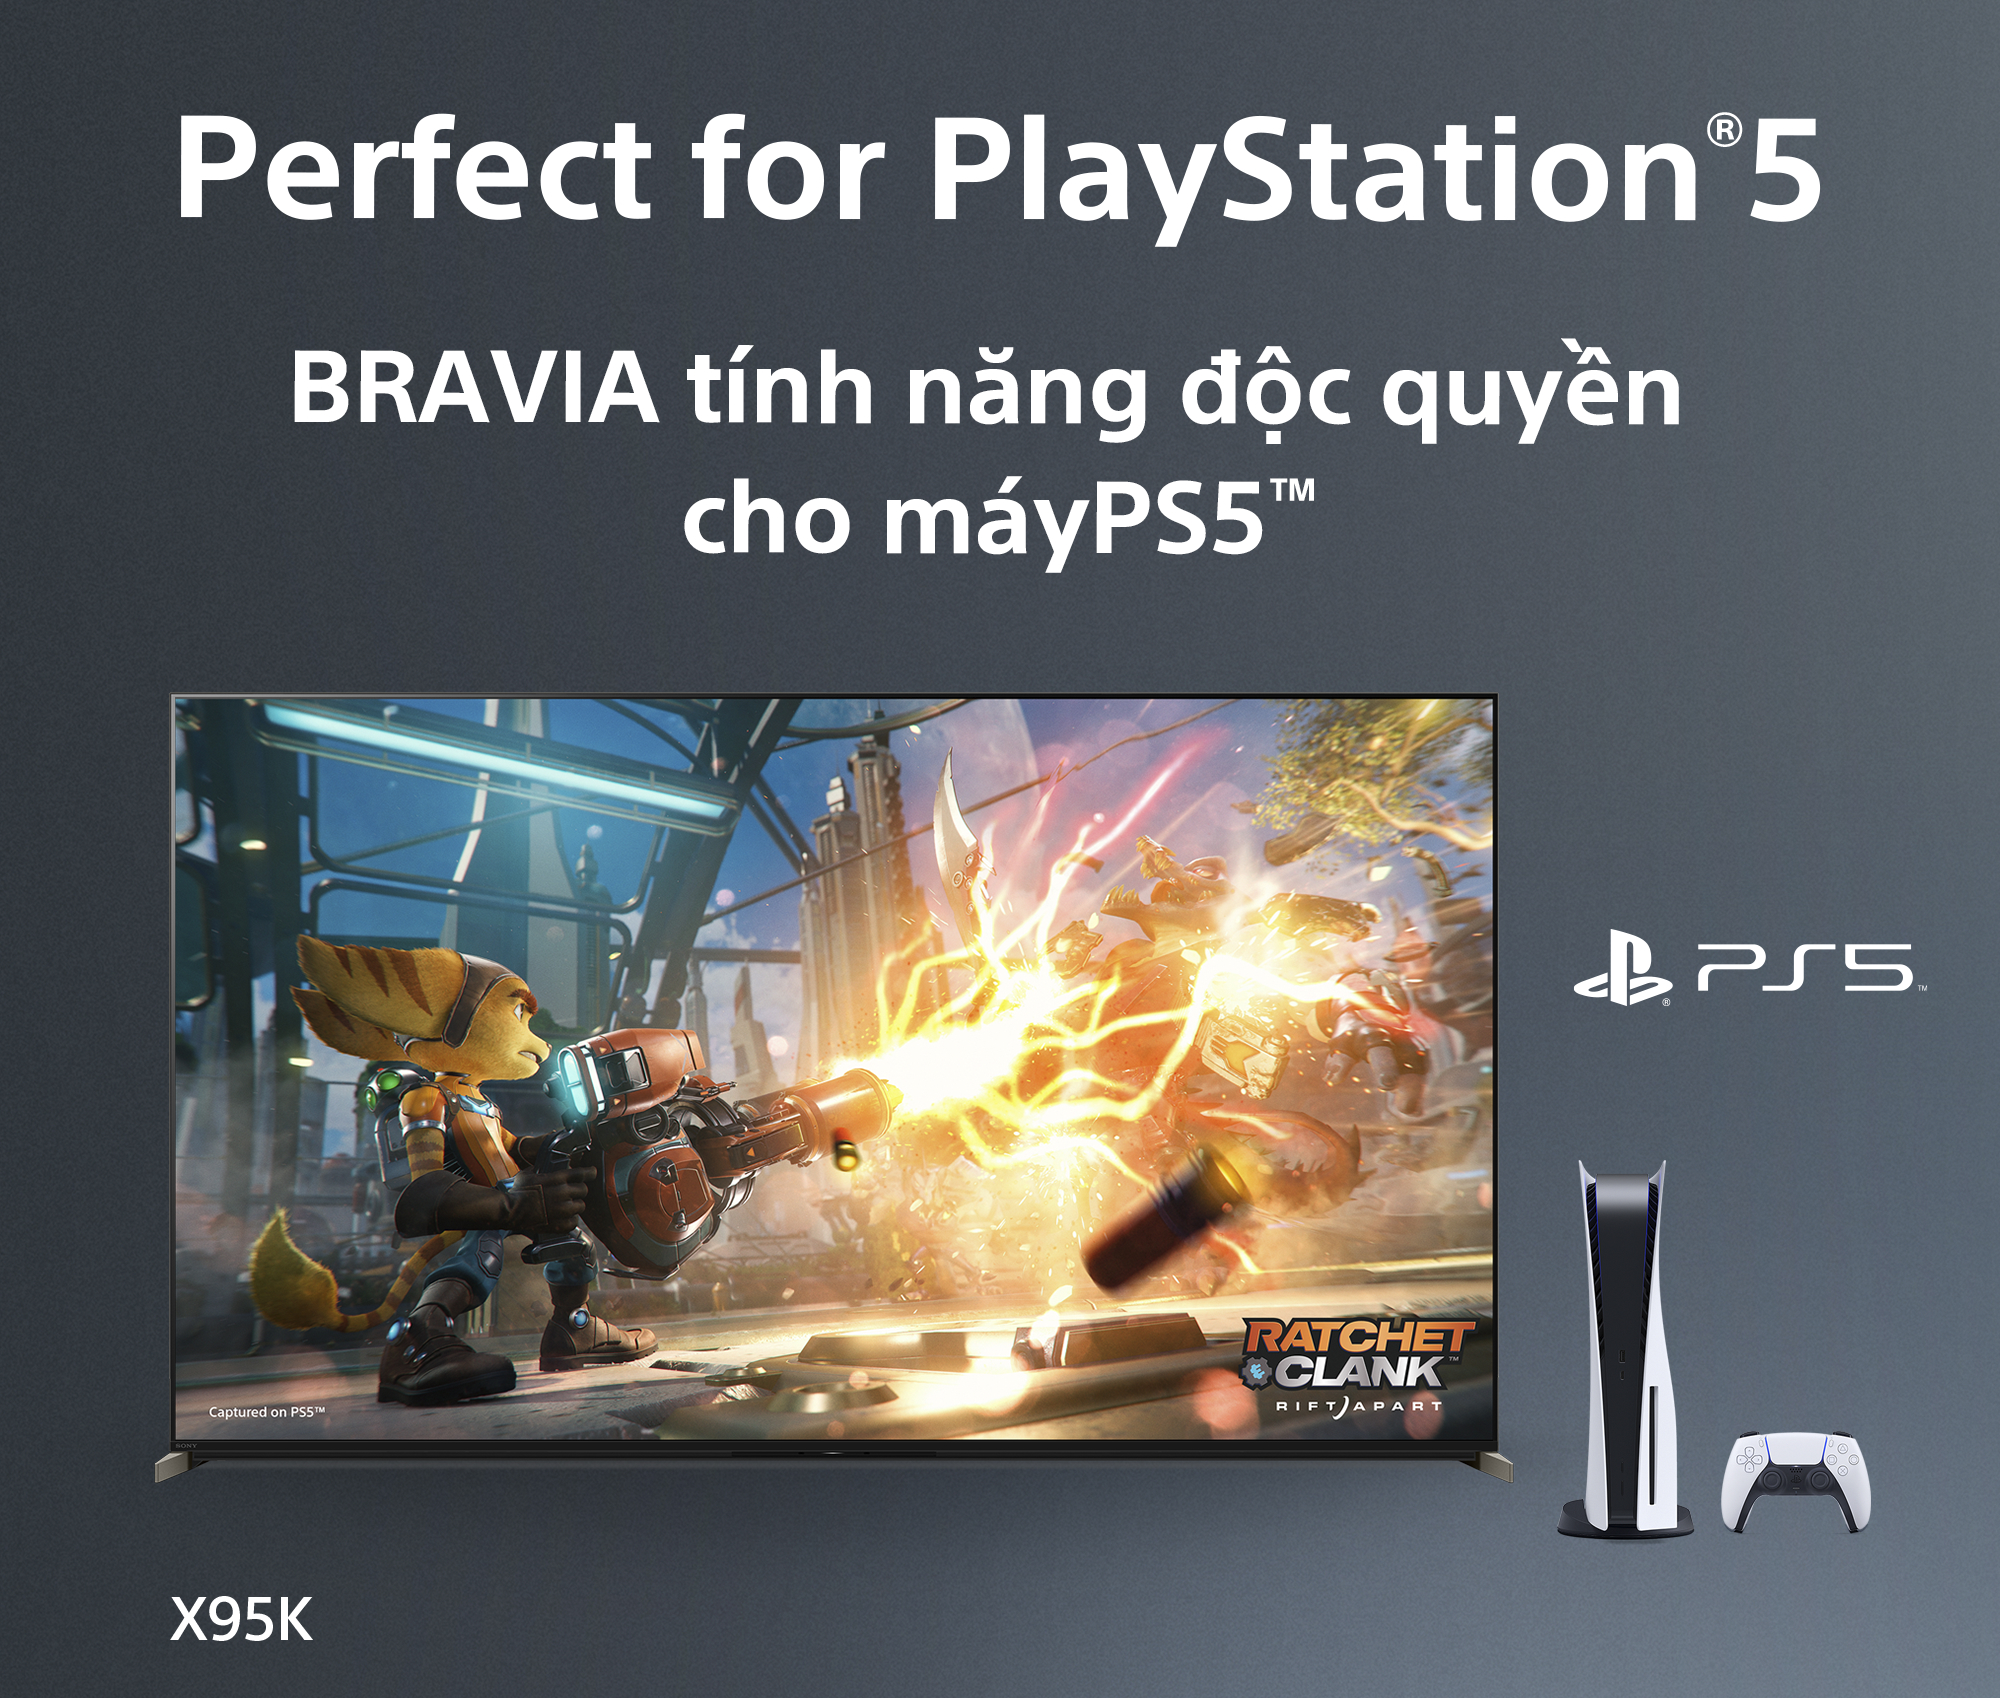 Bravia tính năng độc quyền cho máy PS5™ - Google Tivi Mini LED Sony 4K 65 inch XR-65X95K